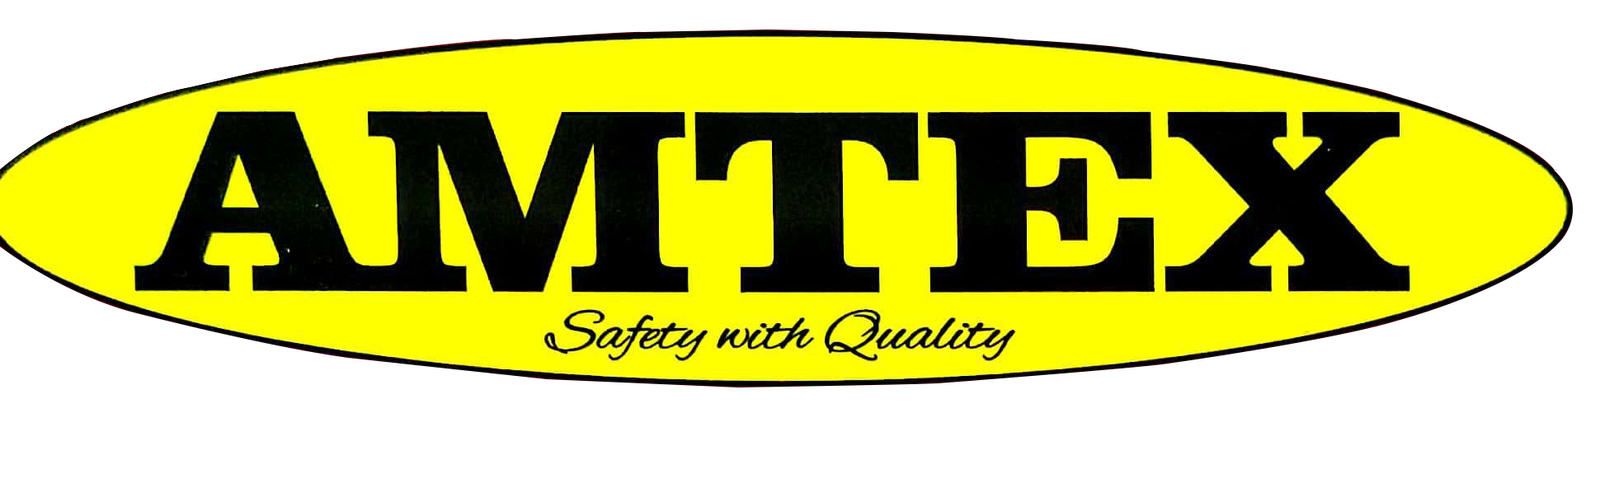 Amtex Safety